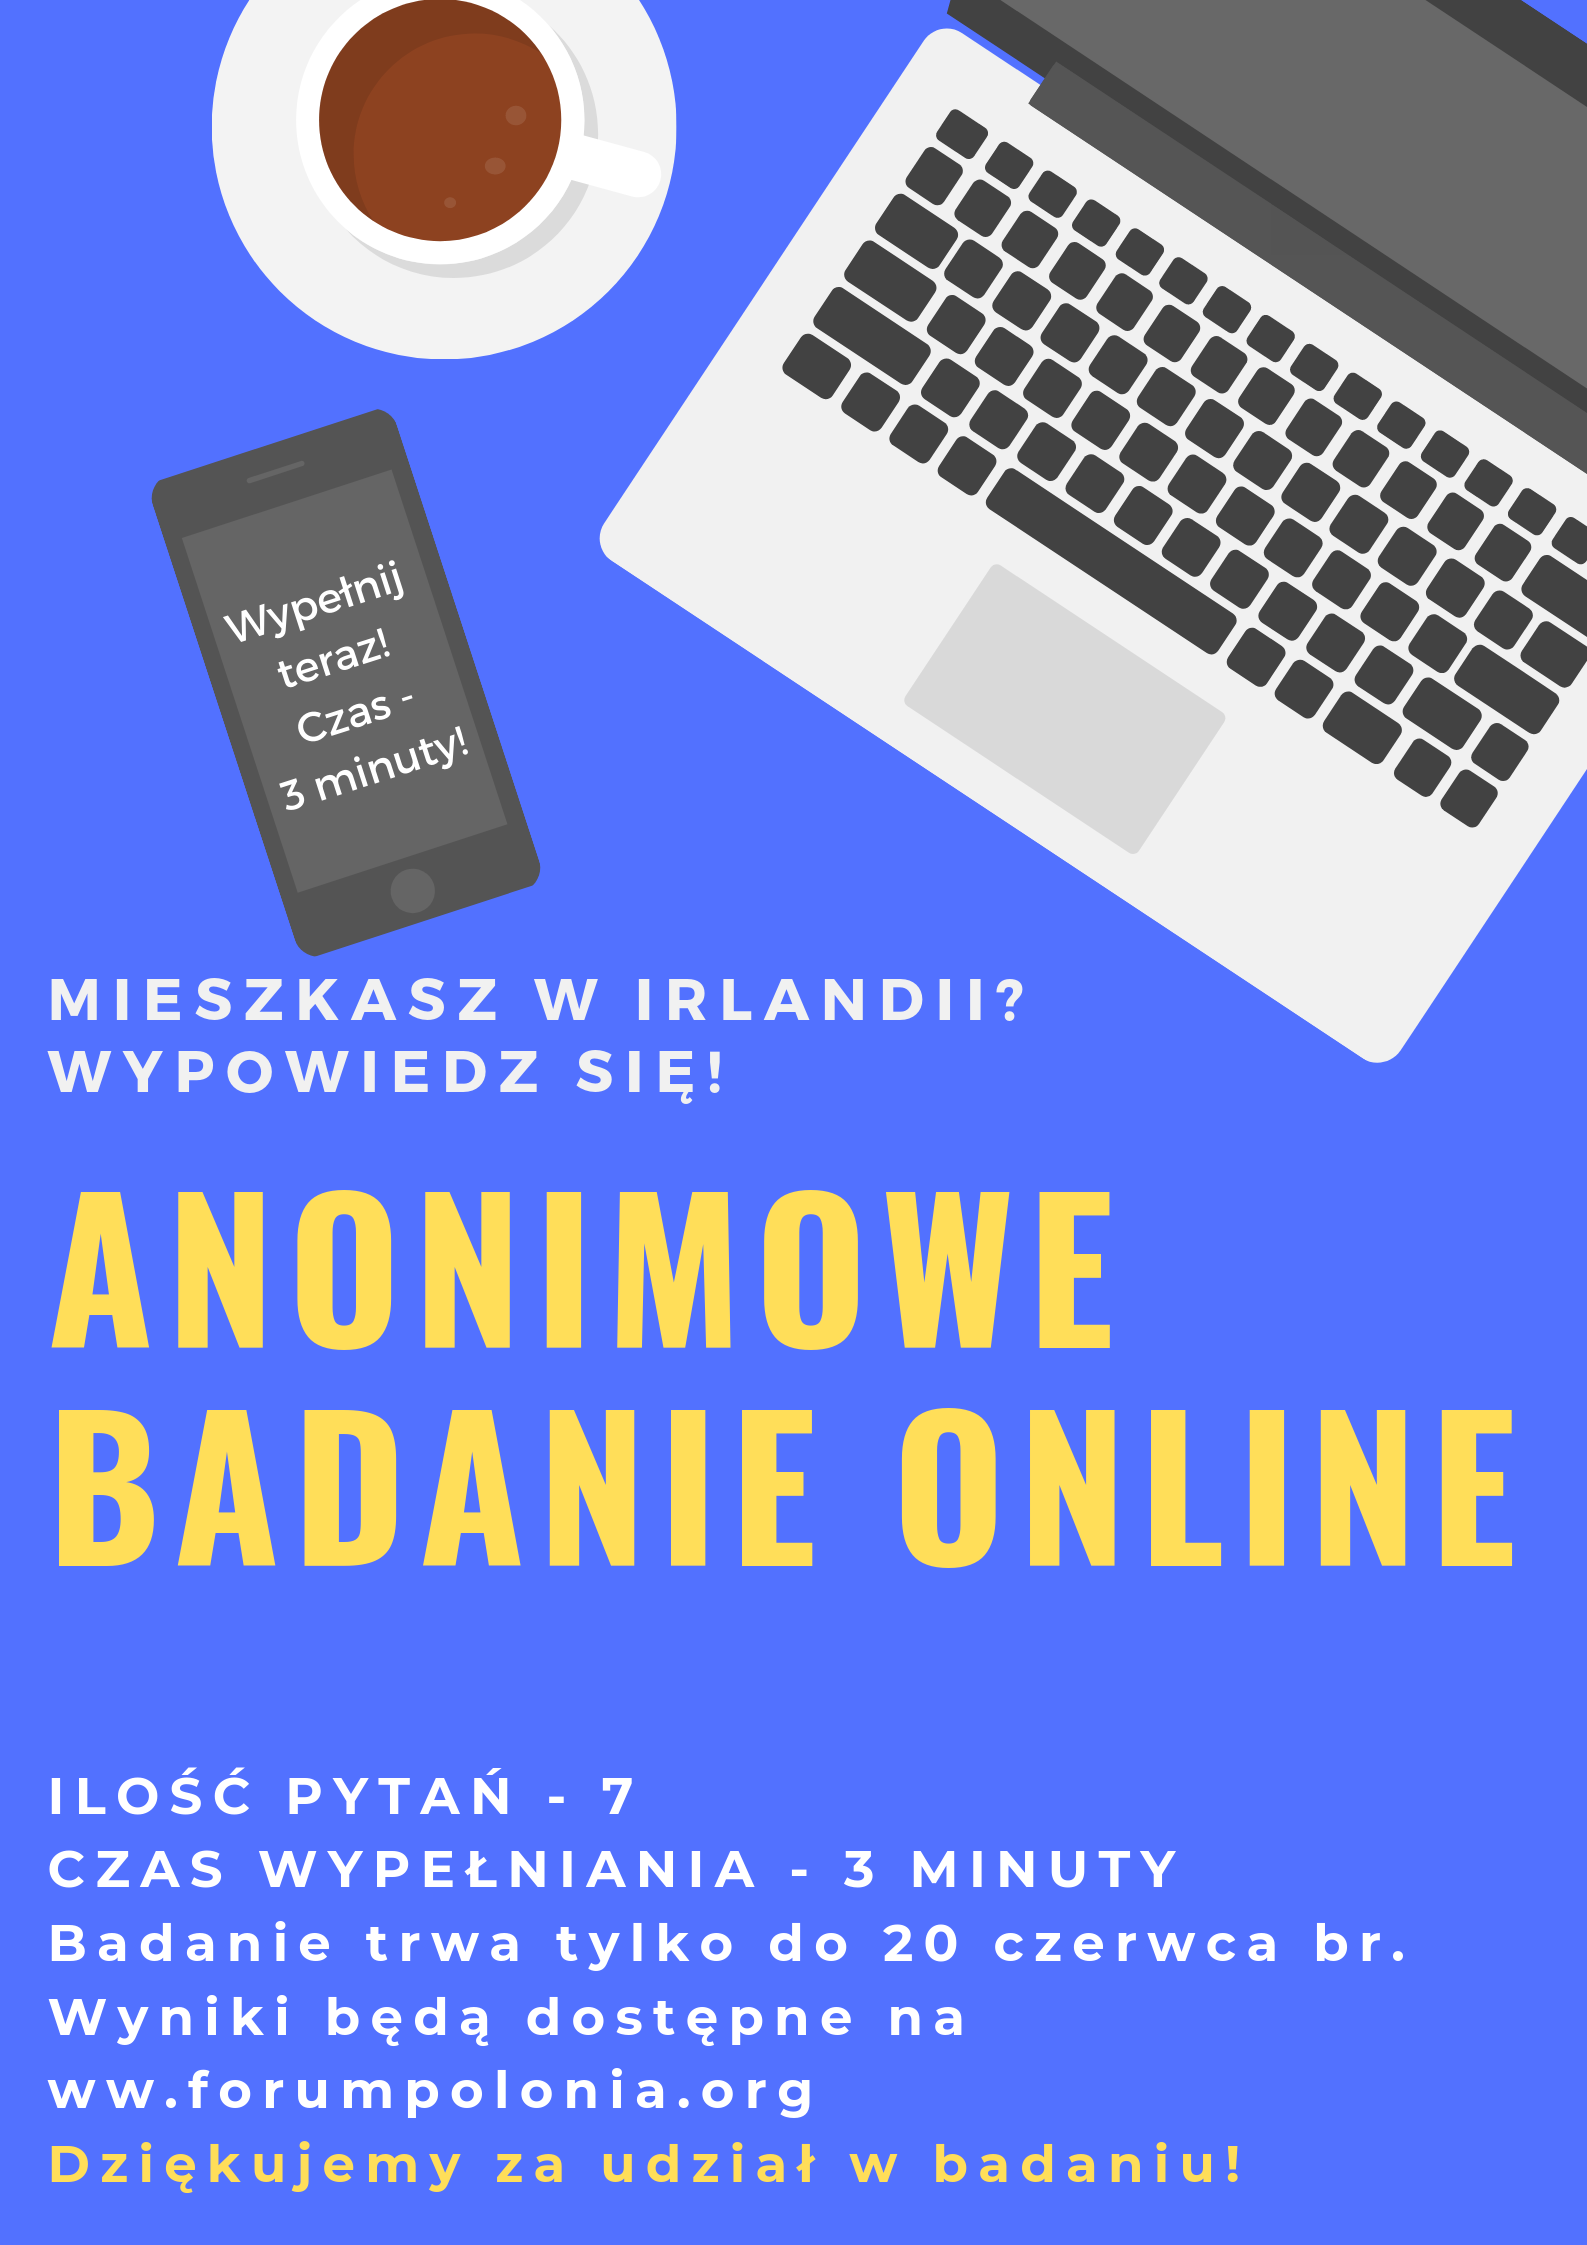 Weź udział w anonimowym badaniu online Polaków w Irlandii